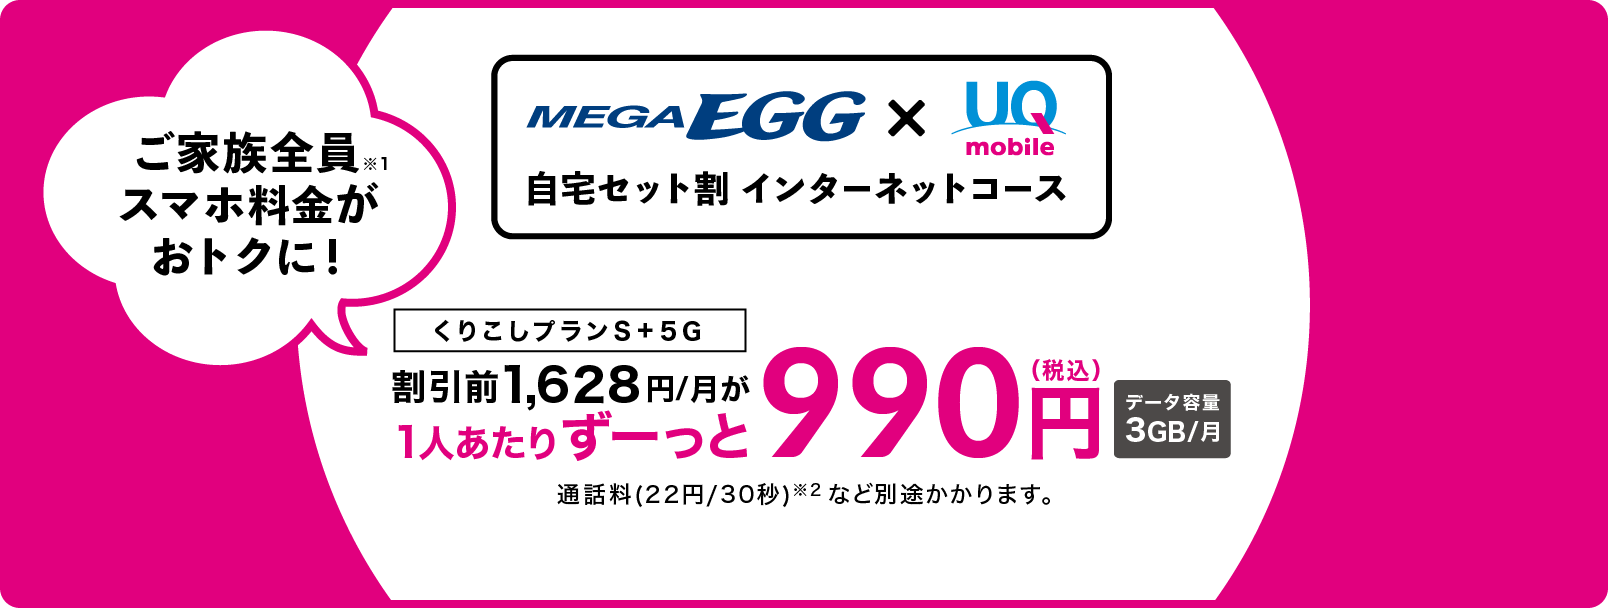 くりこしプランS＋5G/UQ mobileスマホ料金が1人あたりずーっと990円